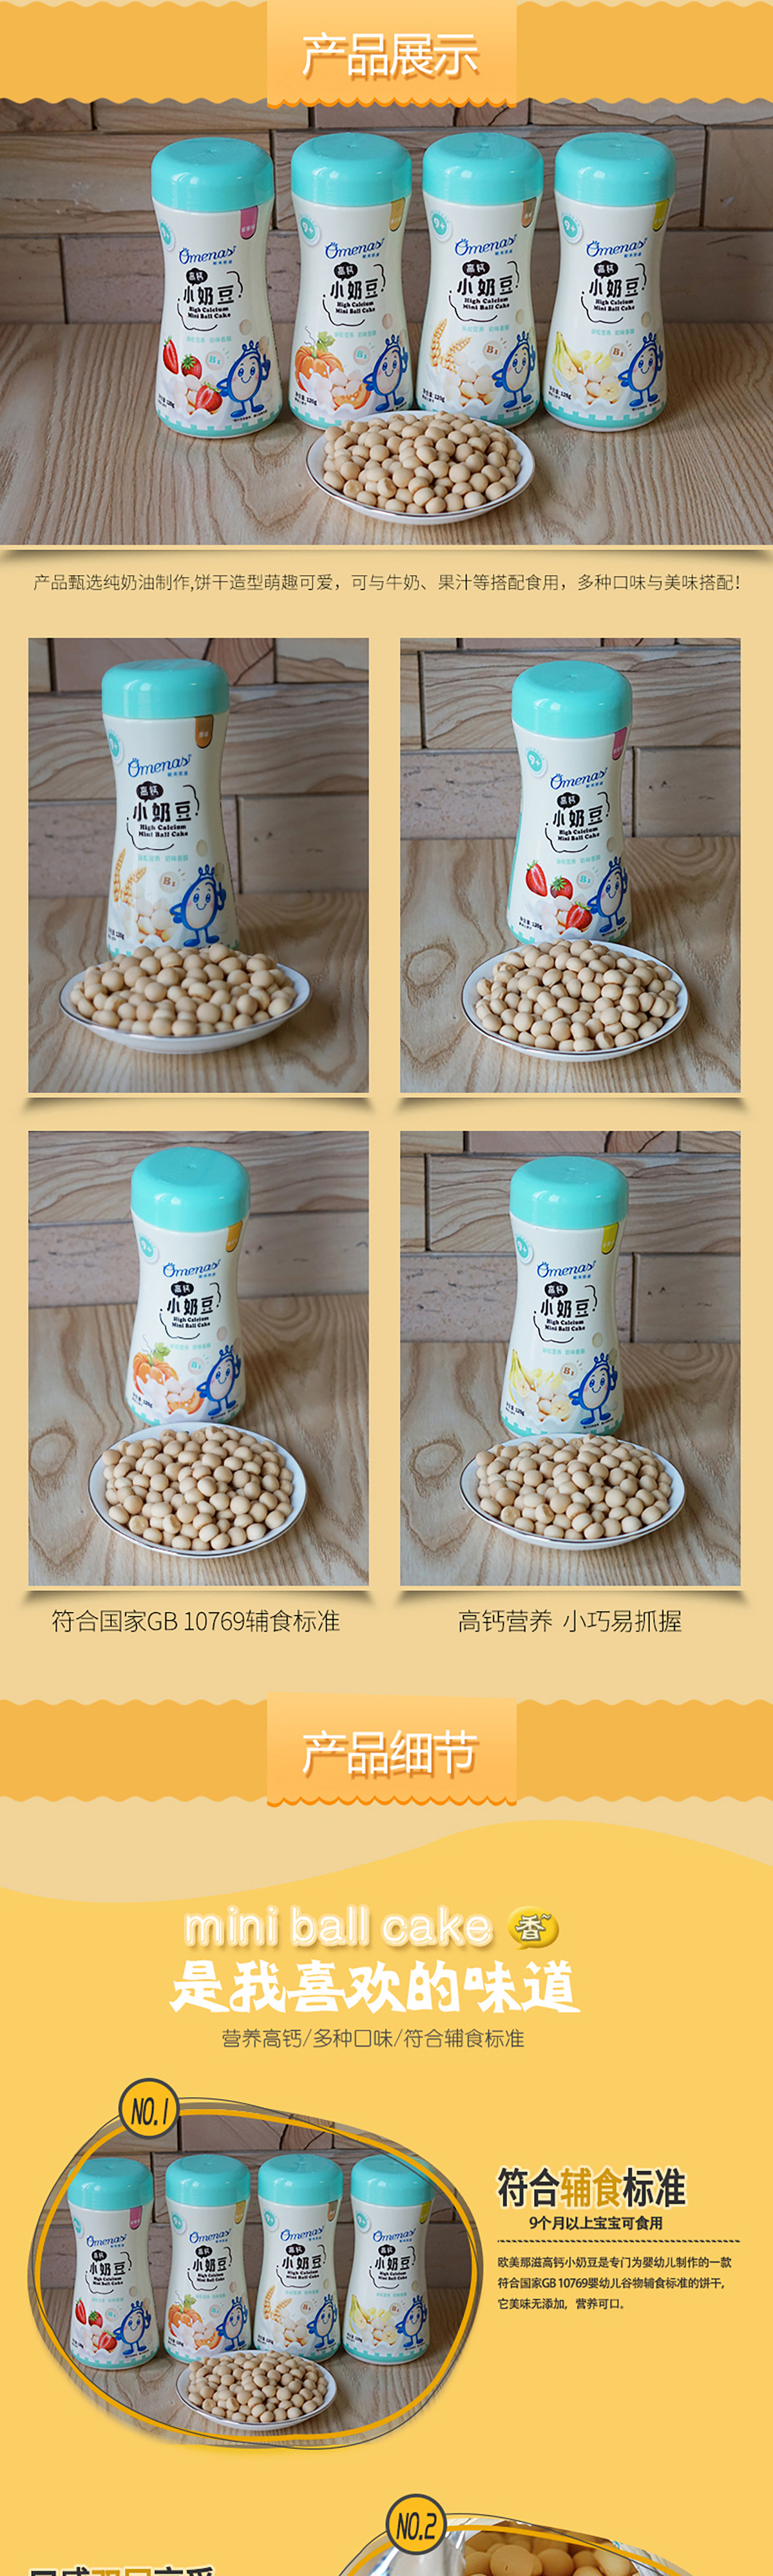 营养小奶豆整体_04.jpg